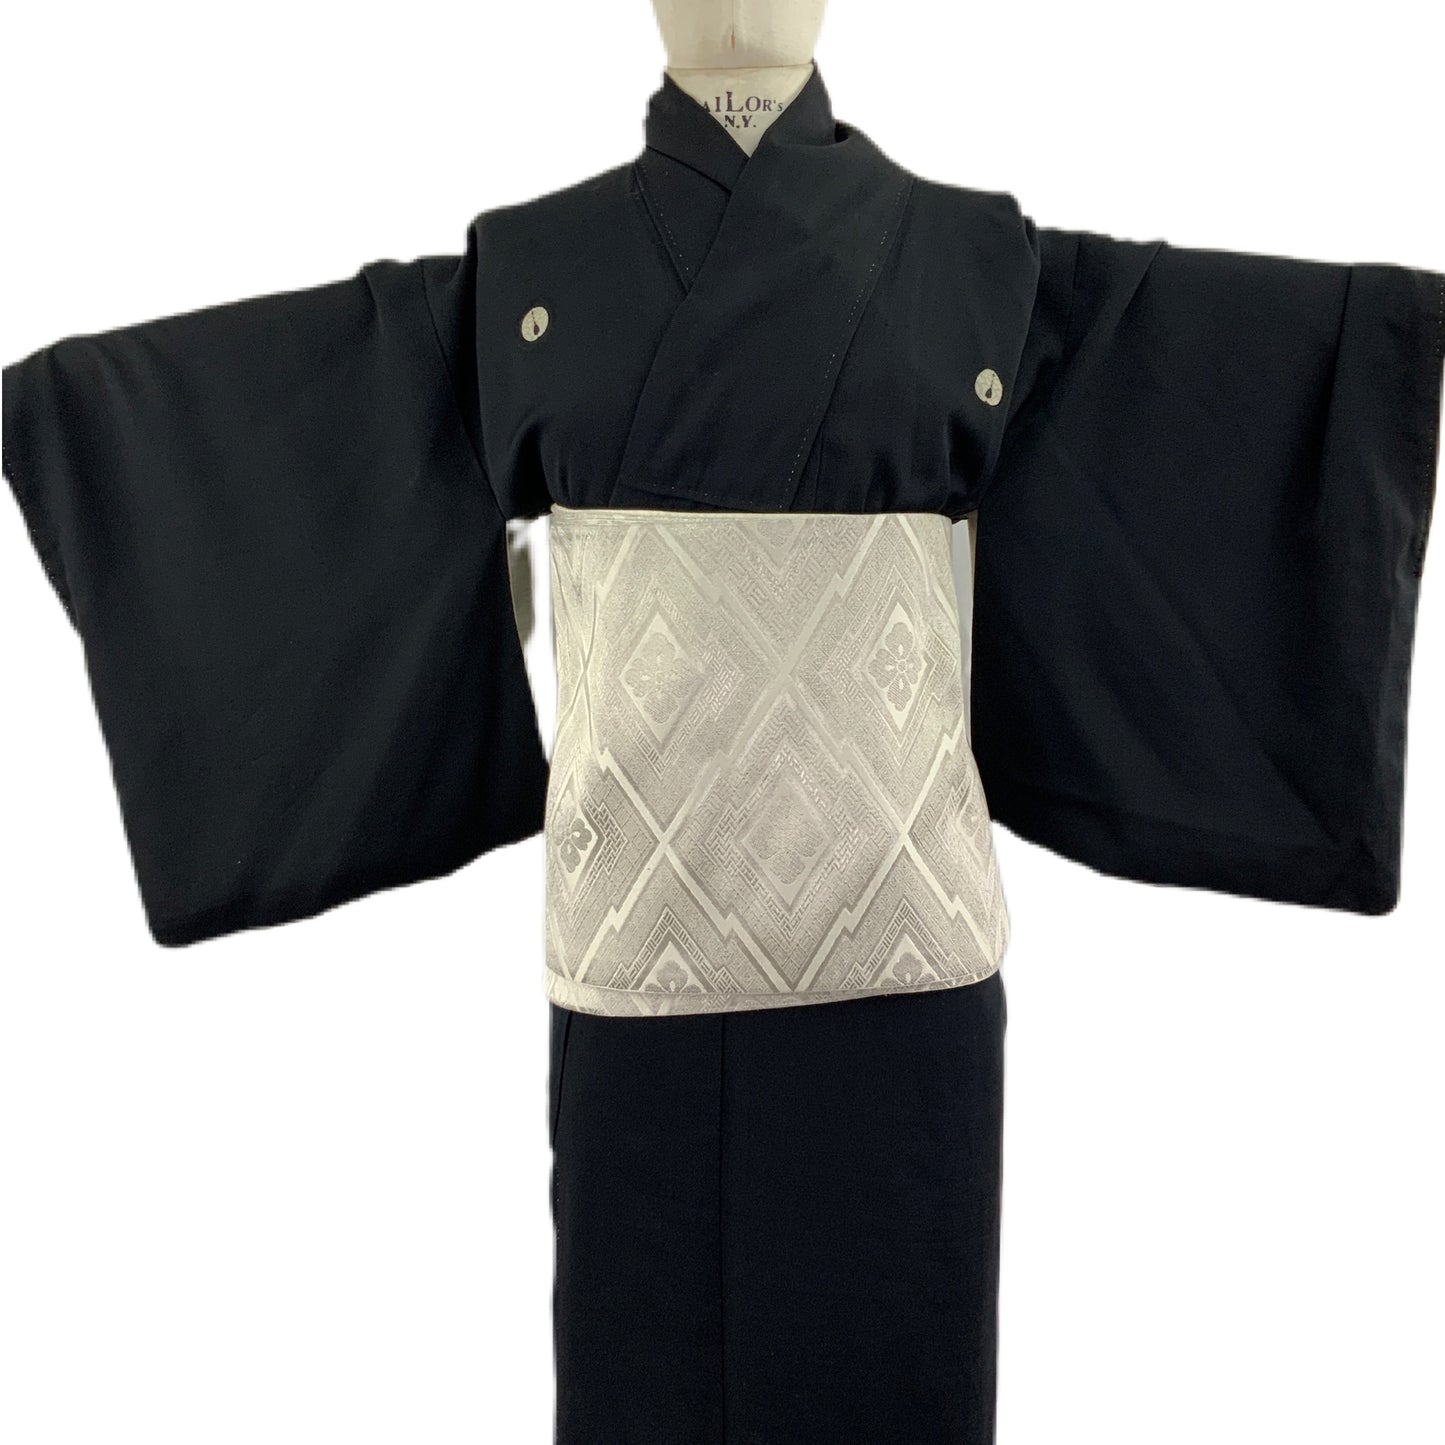 OBI Original mehrfarbiger japanischer Gürtel für Kimono 89